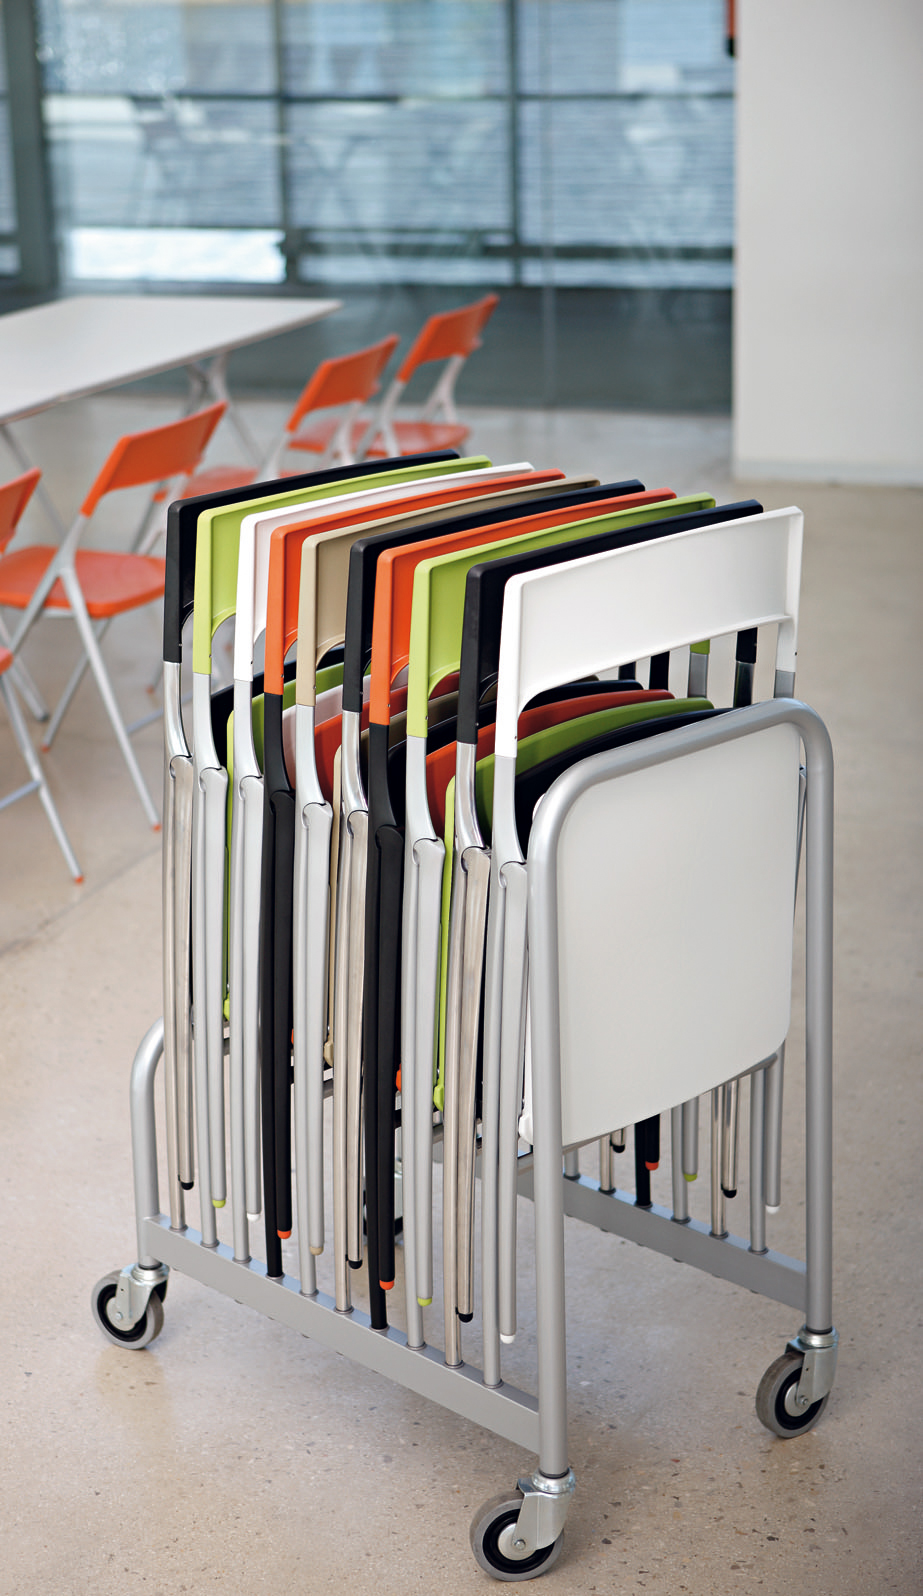 Alegre Design diseño industrial diseño design chair chairs sillas silla furniture mobiliario